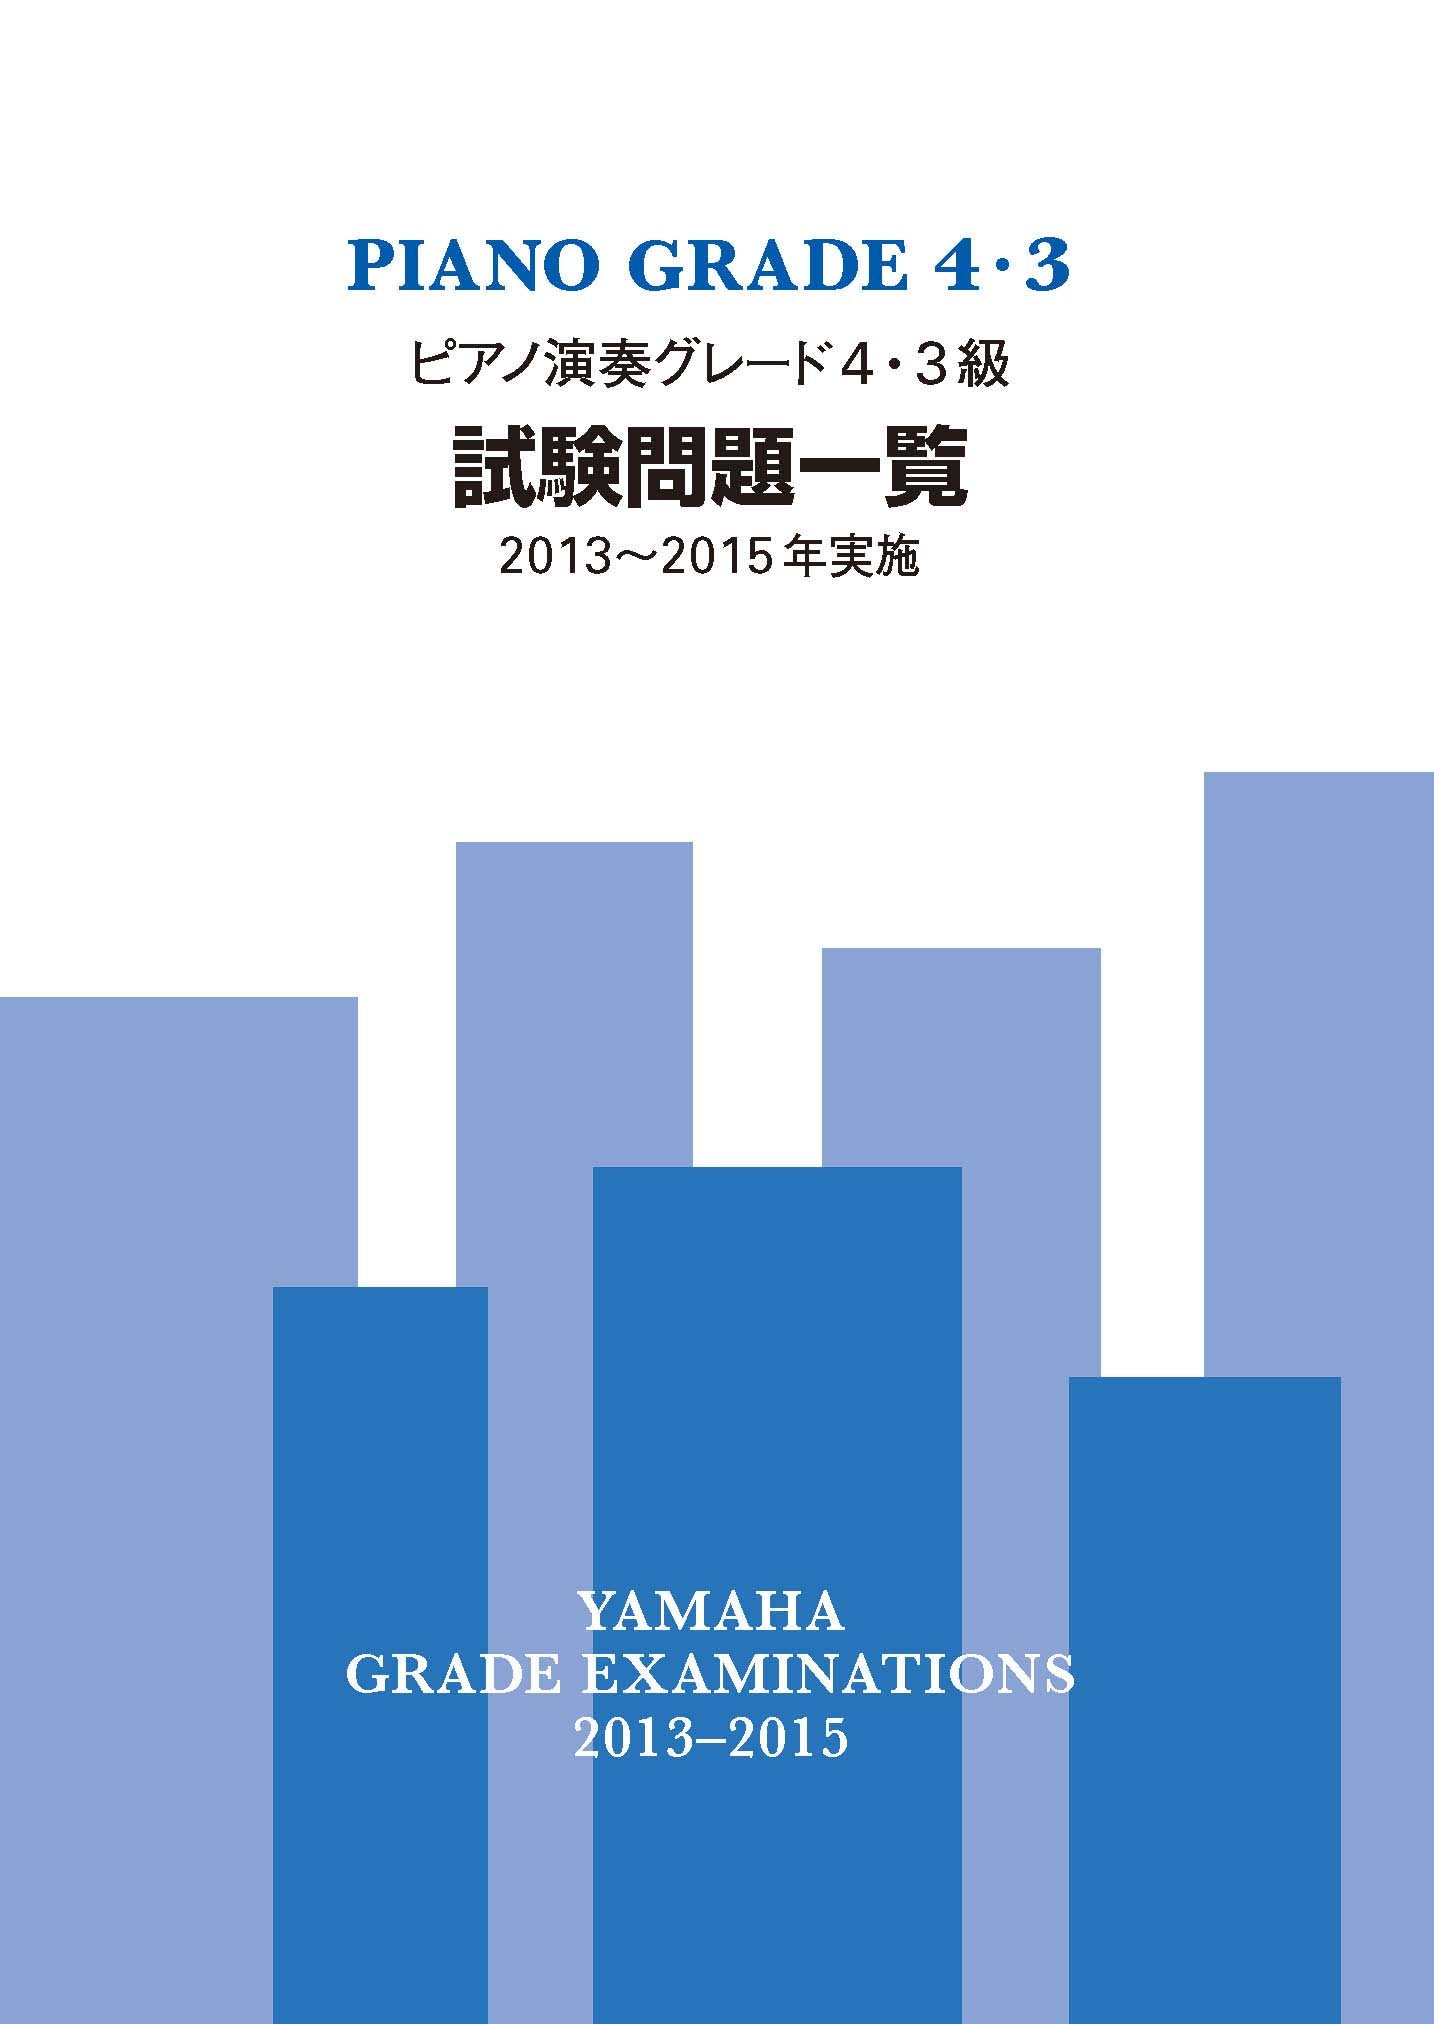 ピアノ演奏グレード4・3級試験問題一覧 2013～2015年実施